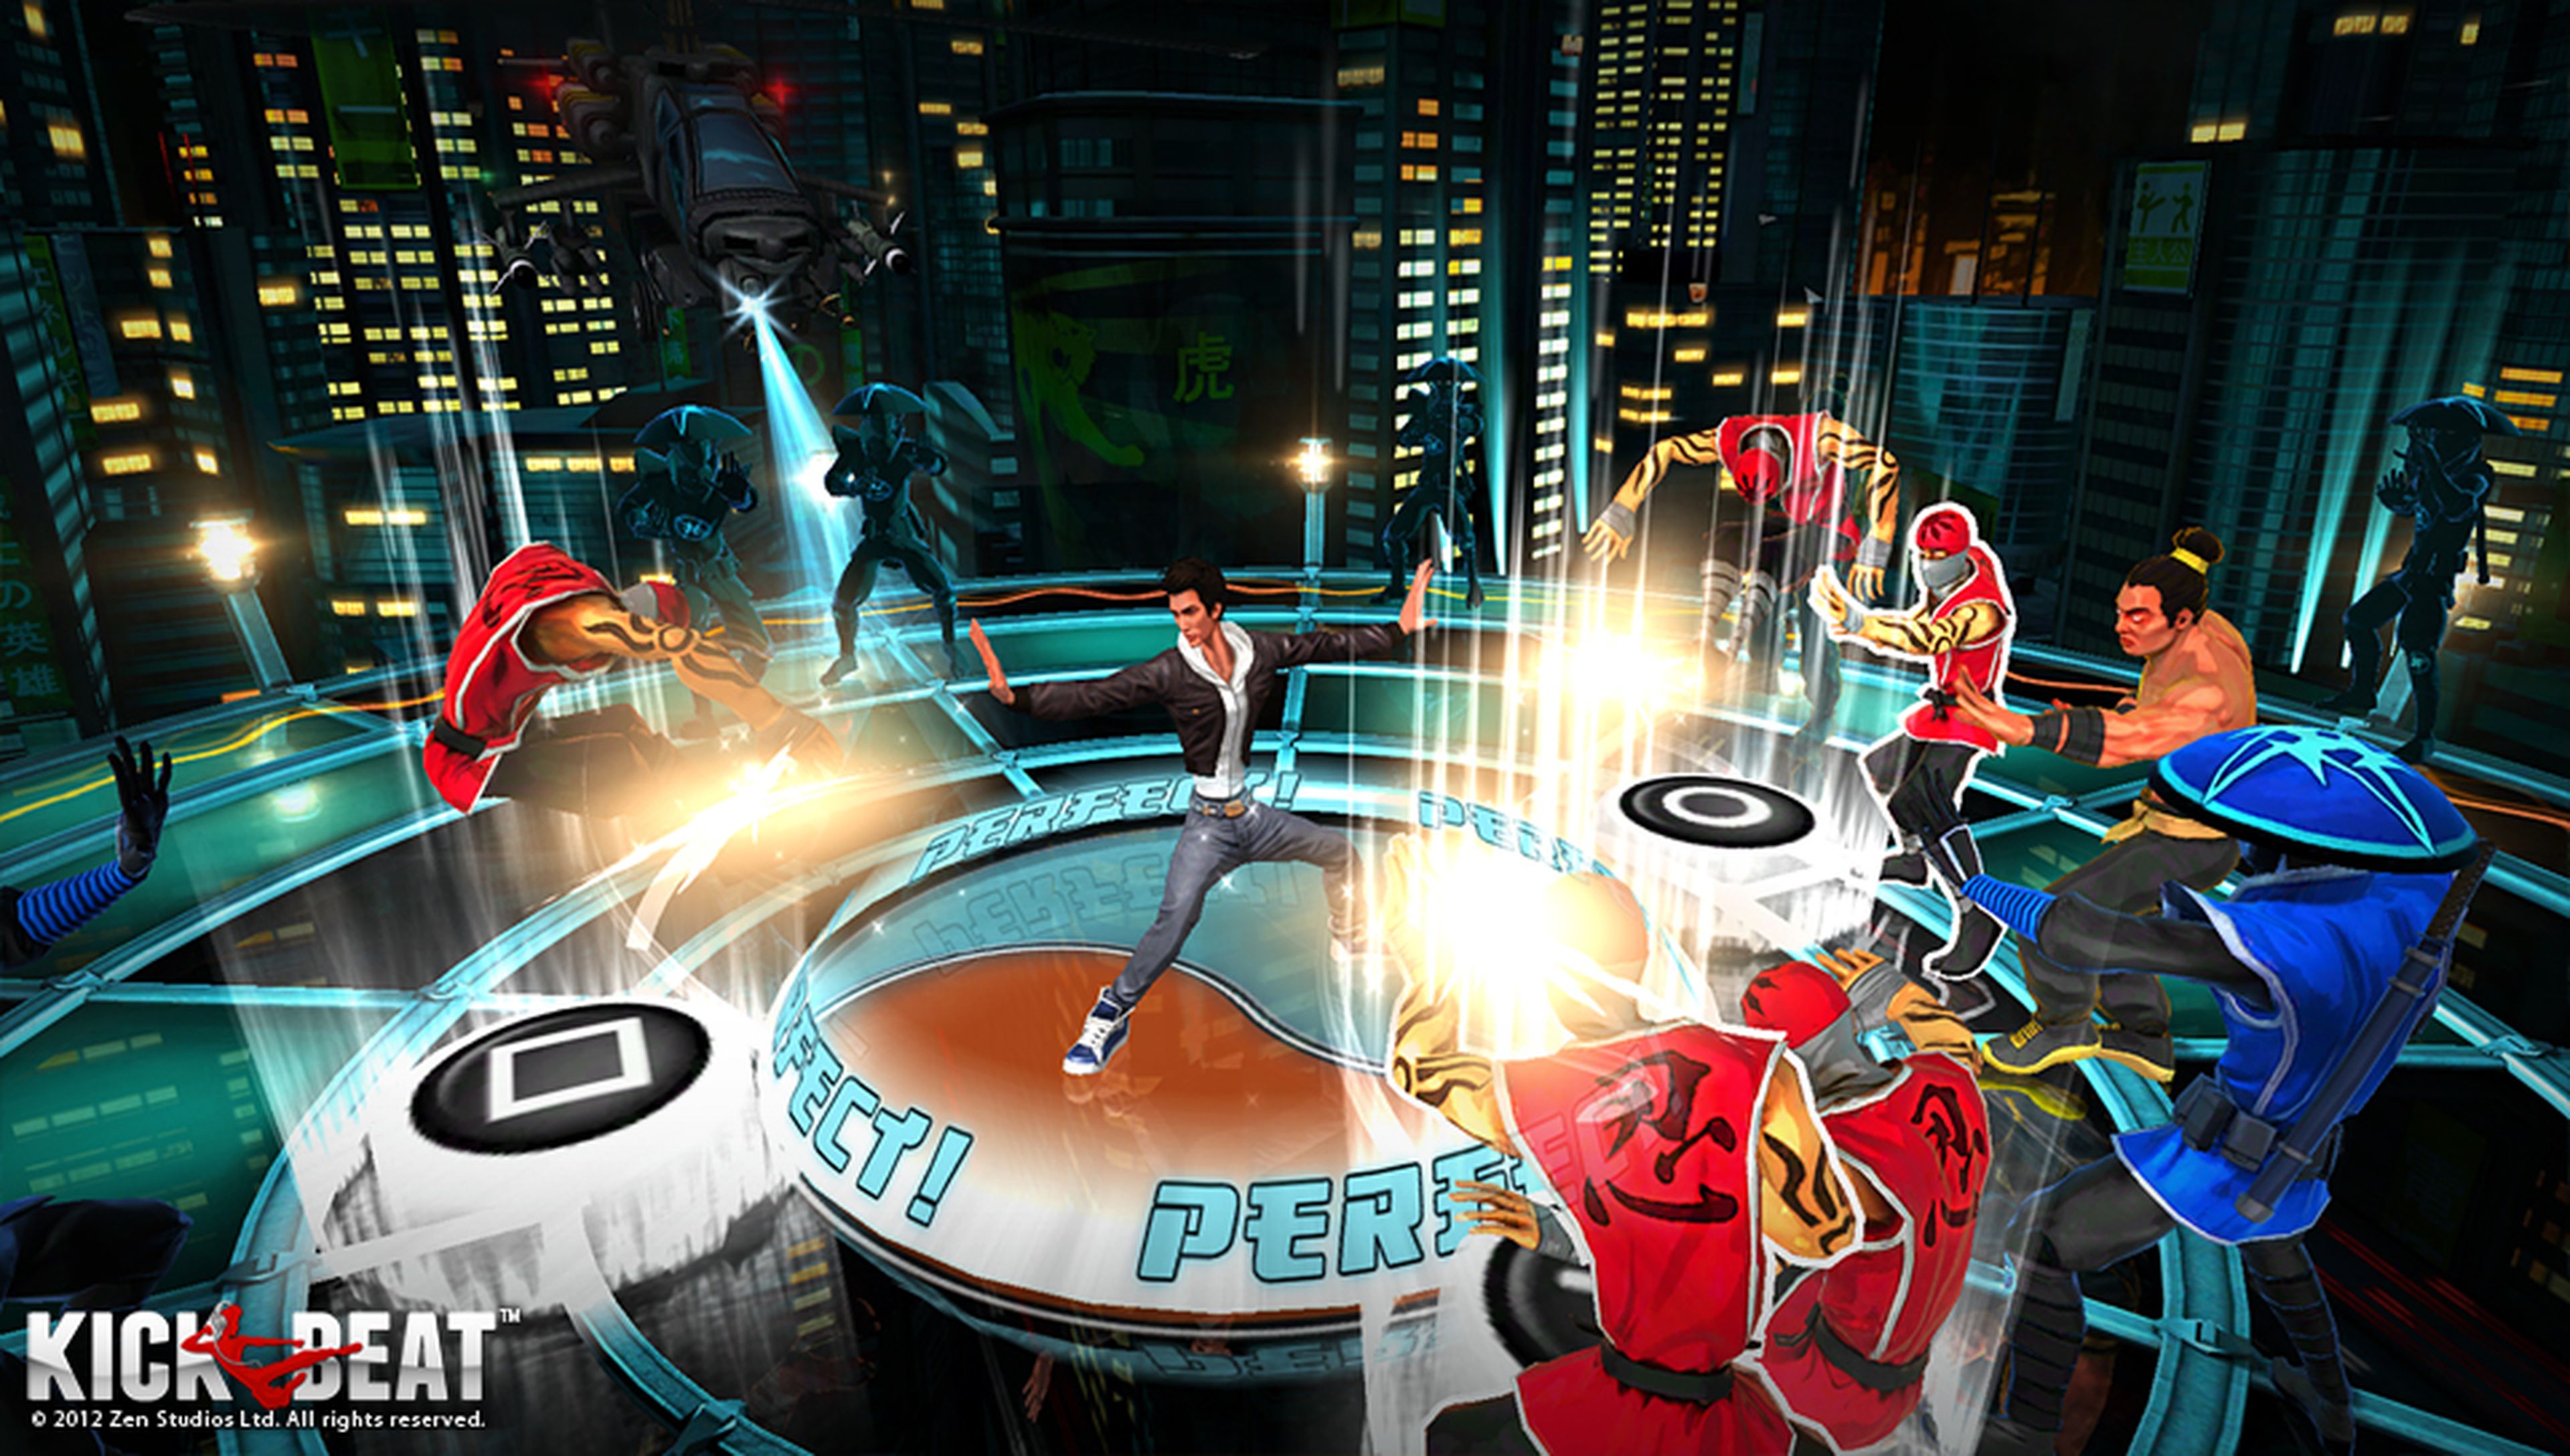 KickBeat llegará a PS3 en septiembre